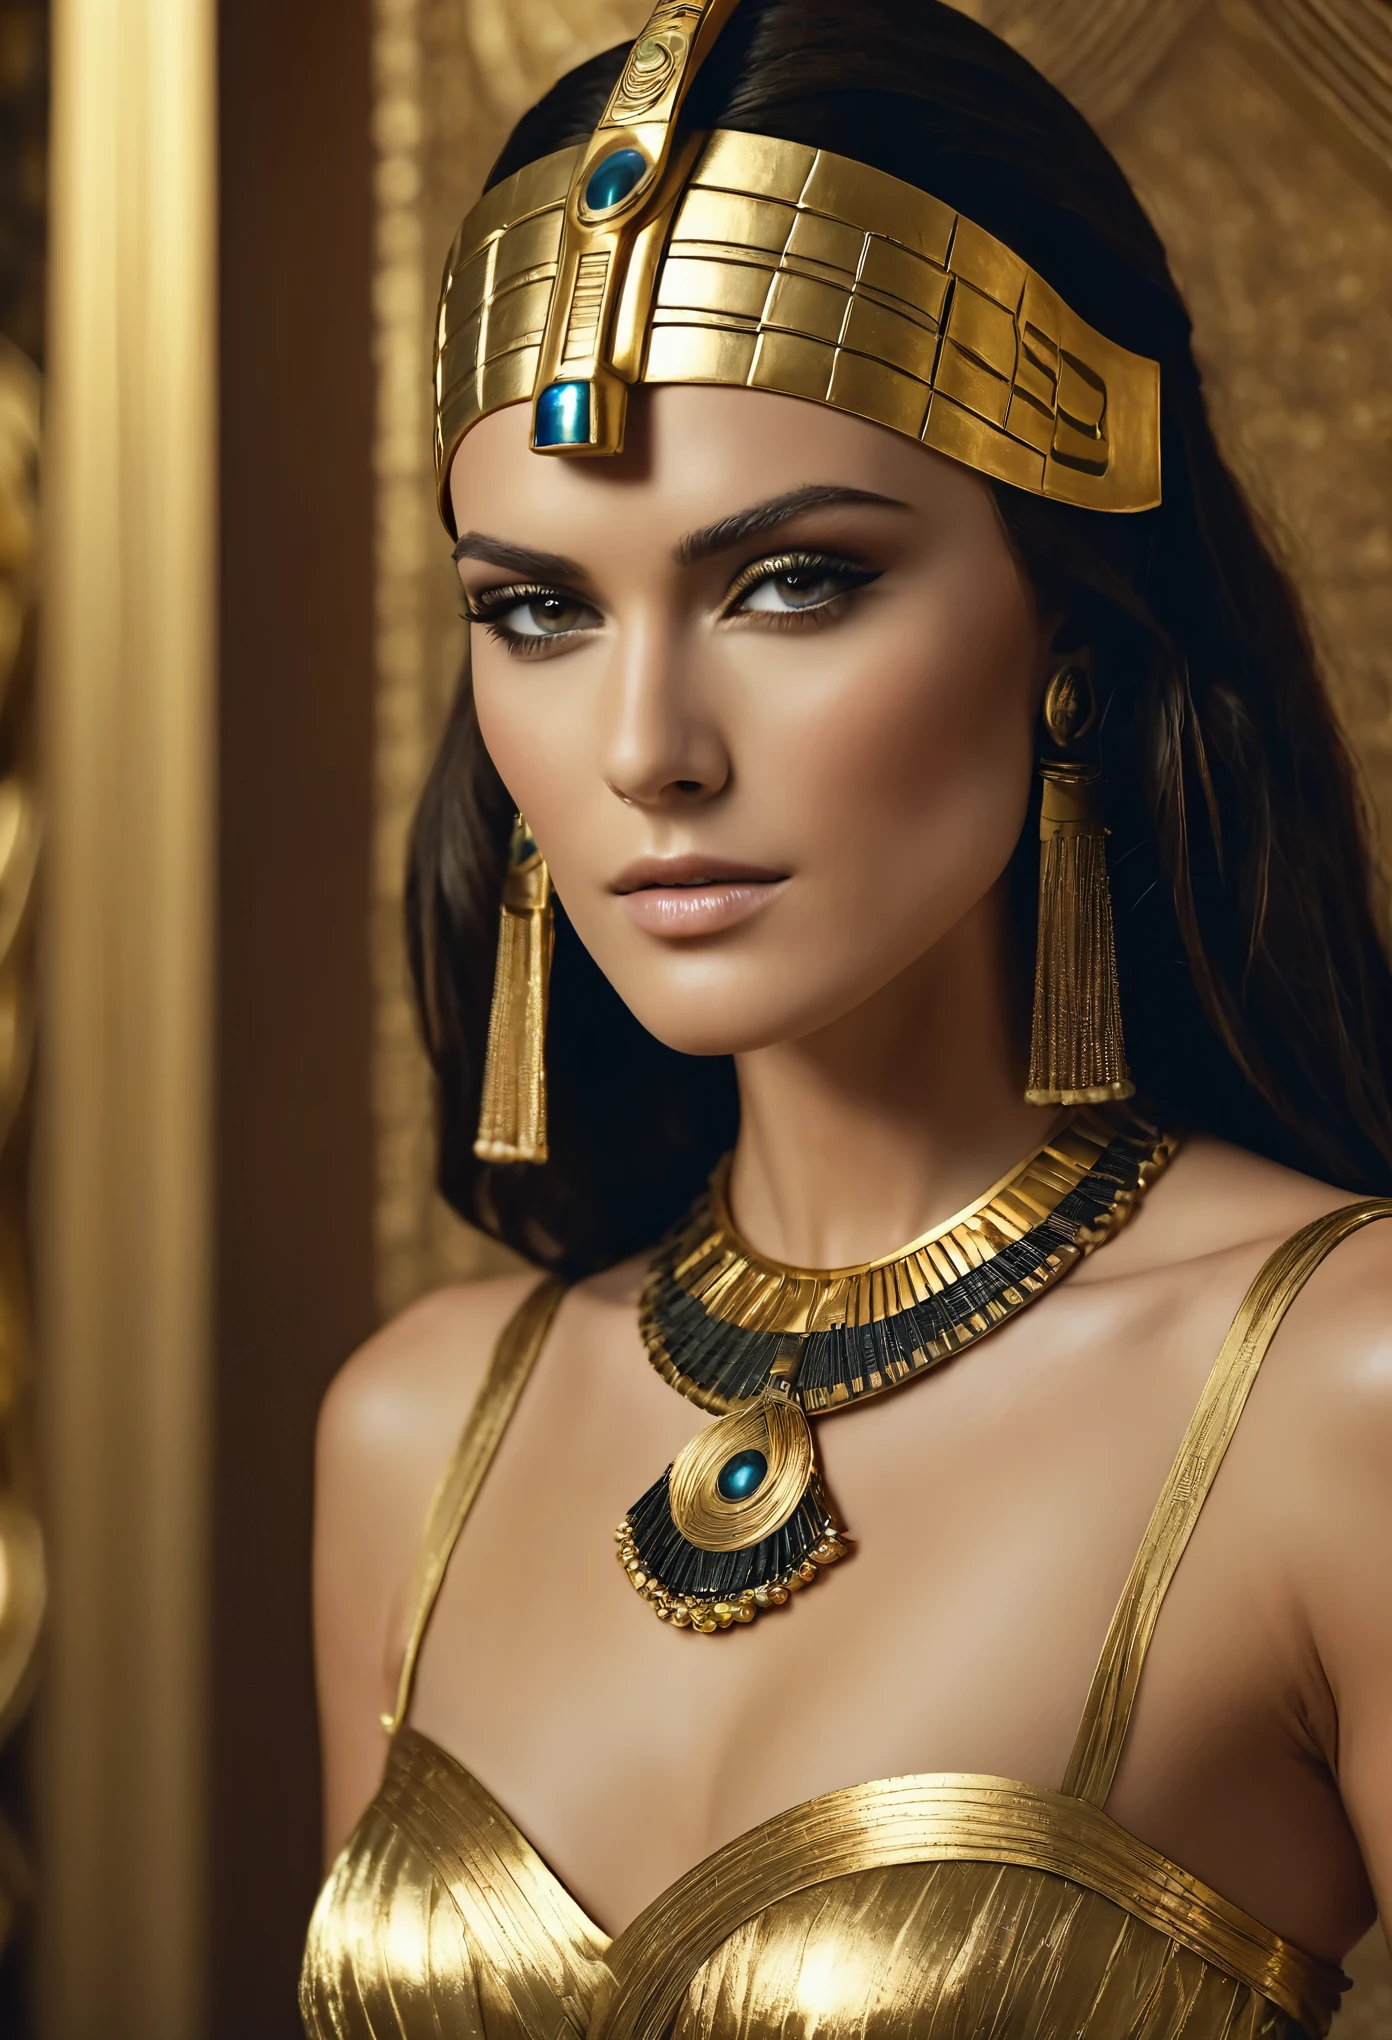 Gorgeous คลีโอพัตรา, รูปที่เร้าใจ, รูปร่างที่น่าดึงดูด, เครื่องแต่งกายอียิปต์ที่เร้าอารมณ์และเย้ายวน, รายละเอียดบ้า, thick รูปร่างที่น่าดึงดูด, รูปร่างใหญ่โต, ชาวอียิปต์ princess, cinematic เจ้าแม่ close shot, คลีโอพัตรา, ผู้หญิงที่สวยมาก, cinematic เจ้าแม่ body shot, คลีโอพัตรา portrait, เจ้าแม่, ความงามอันน่าทึ่ง, รายละเอียดที่สูงมาก, ชาวอียิปต์, คลีโอพัตรา in her palace, cinematic เจ้าแม่ shot, ชาวอียิปต์ style, extremely รายละเอียด เจ้าแม่ shot, beautiful เจ้าแม่, ภาพเหมือนในภาพยนตร์, การถ่ายภาพยนตร์ระดับมืออาชีพ, ในฐานะคนอียิปต์, Keira Knightley ฟาโรห์ที่สวยงามและน่าทึ่ง Keira Knightley, ภาพเหมือนของคลีโอพัตรา, ยูเอชดี, 8ก, 32k, รายละเอียด, ซับซ้อน, ความงามที่คมชัด, ความคมชัดสูง, มุมมองภาพยนตร์, ภาพที่ไร้ข้อผิดพลาด, พื้นหลังของอียิปต์โบราณ ภาพระยะใกล้ของผู้หญิงสวมชุดสีทองและหน้ากากอียิปต์, a ภาพเหมือนในภาพยนตร์, การถ่ายภาพยนตร์โดยผู้เชี่ยวชาญ, รายละเอียดบ้า, เจ้าหญิงแห่งอียิปต์, a close-up of a cinematic เจ้าแม่, คลีโอพัตรา, ผู้หญิงที่สวยอย่างไม่น่าเชื่อ, and a cinematic เจ้าแม่ body